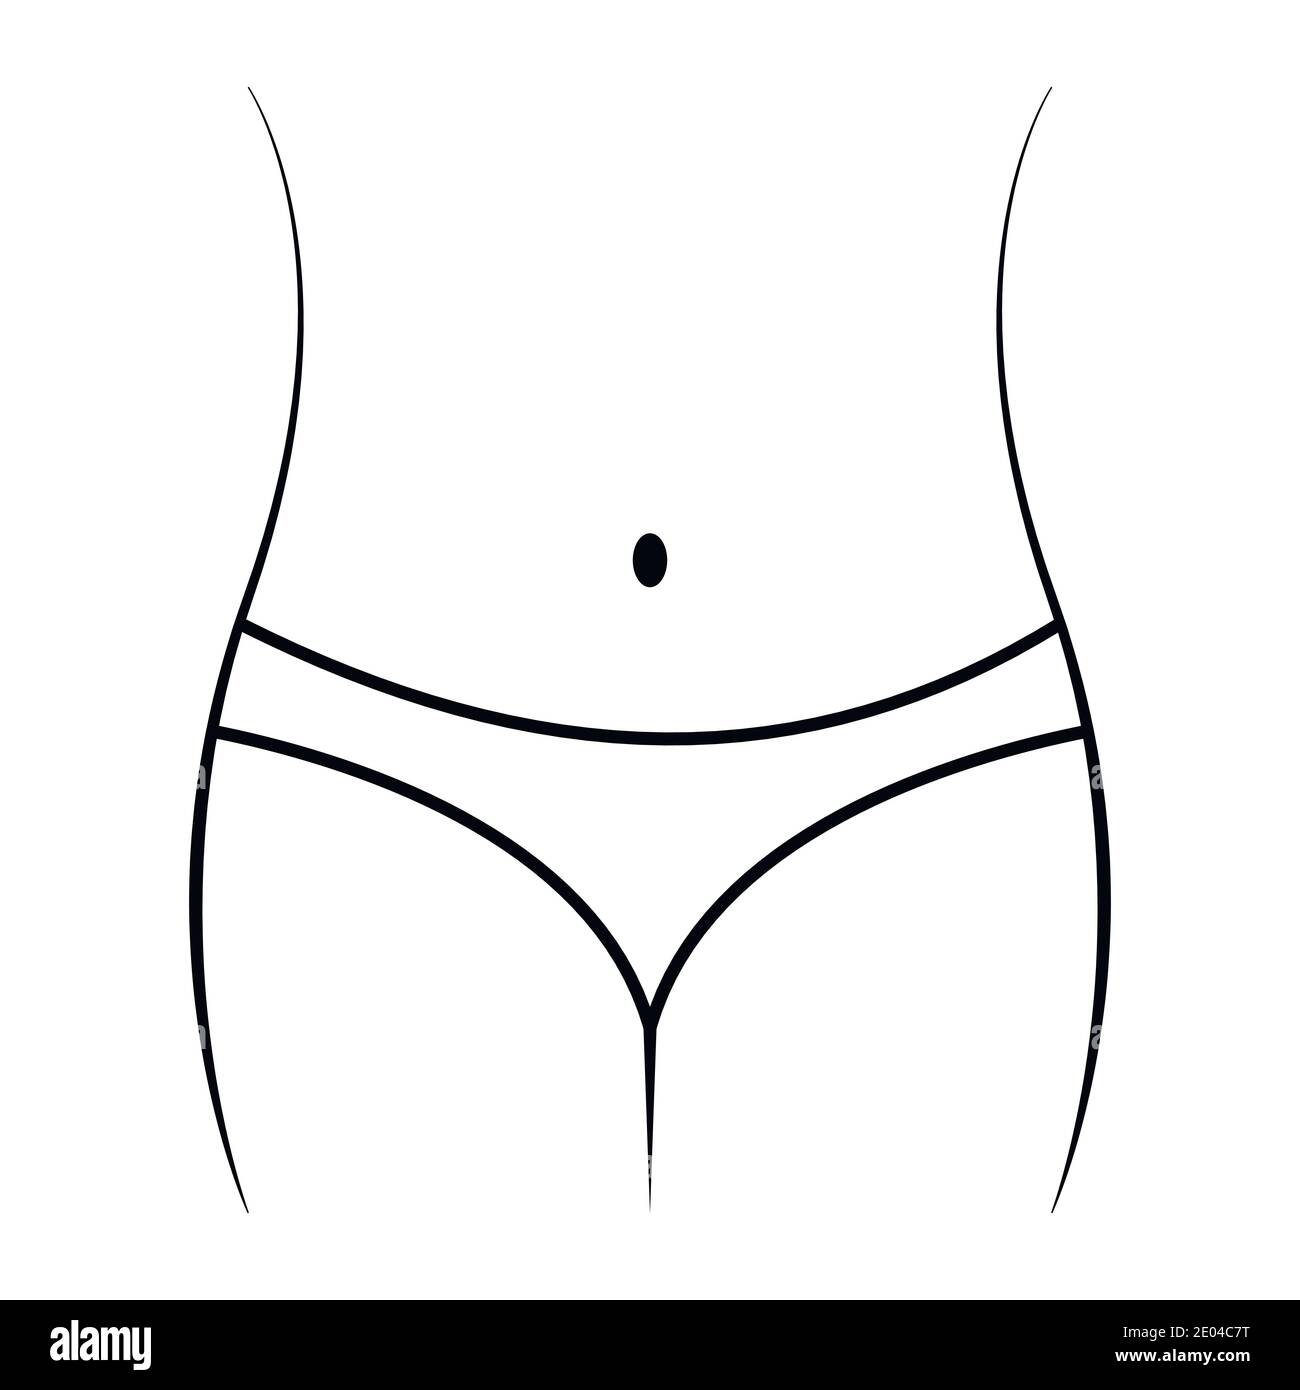 Lineare Schlankheits-Symbol, Silhouette anmutiger weiblicher Körper Bauch, Taille und Hüften, Vektor-Konzept Ernährung, Fitness, Sport. Icon Körpergewicht weiblich Stock Vektor